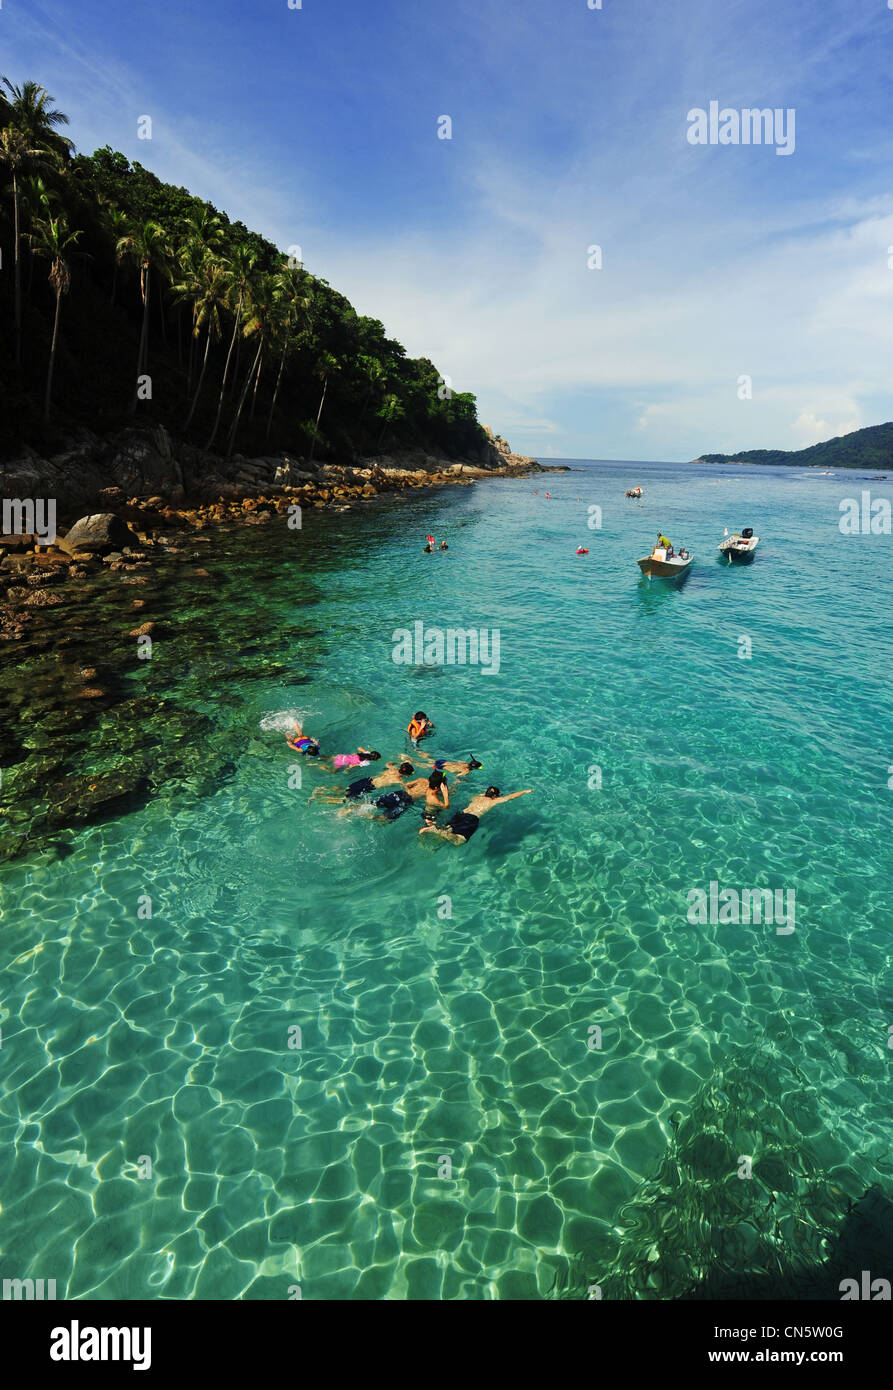 La Malaisie, l'Etat de Terengganu, Îles Perhentian Perhentian Kecil, touristes, snorkling dans l'eau turquoise Banque D'Images